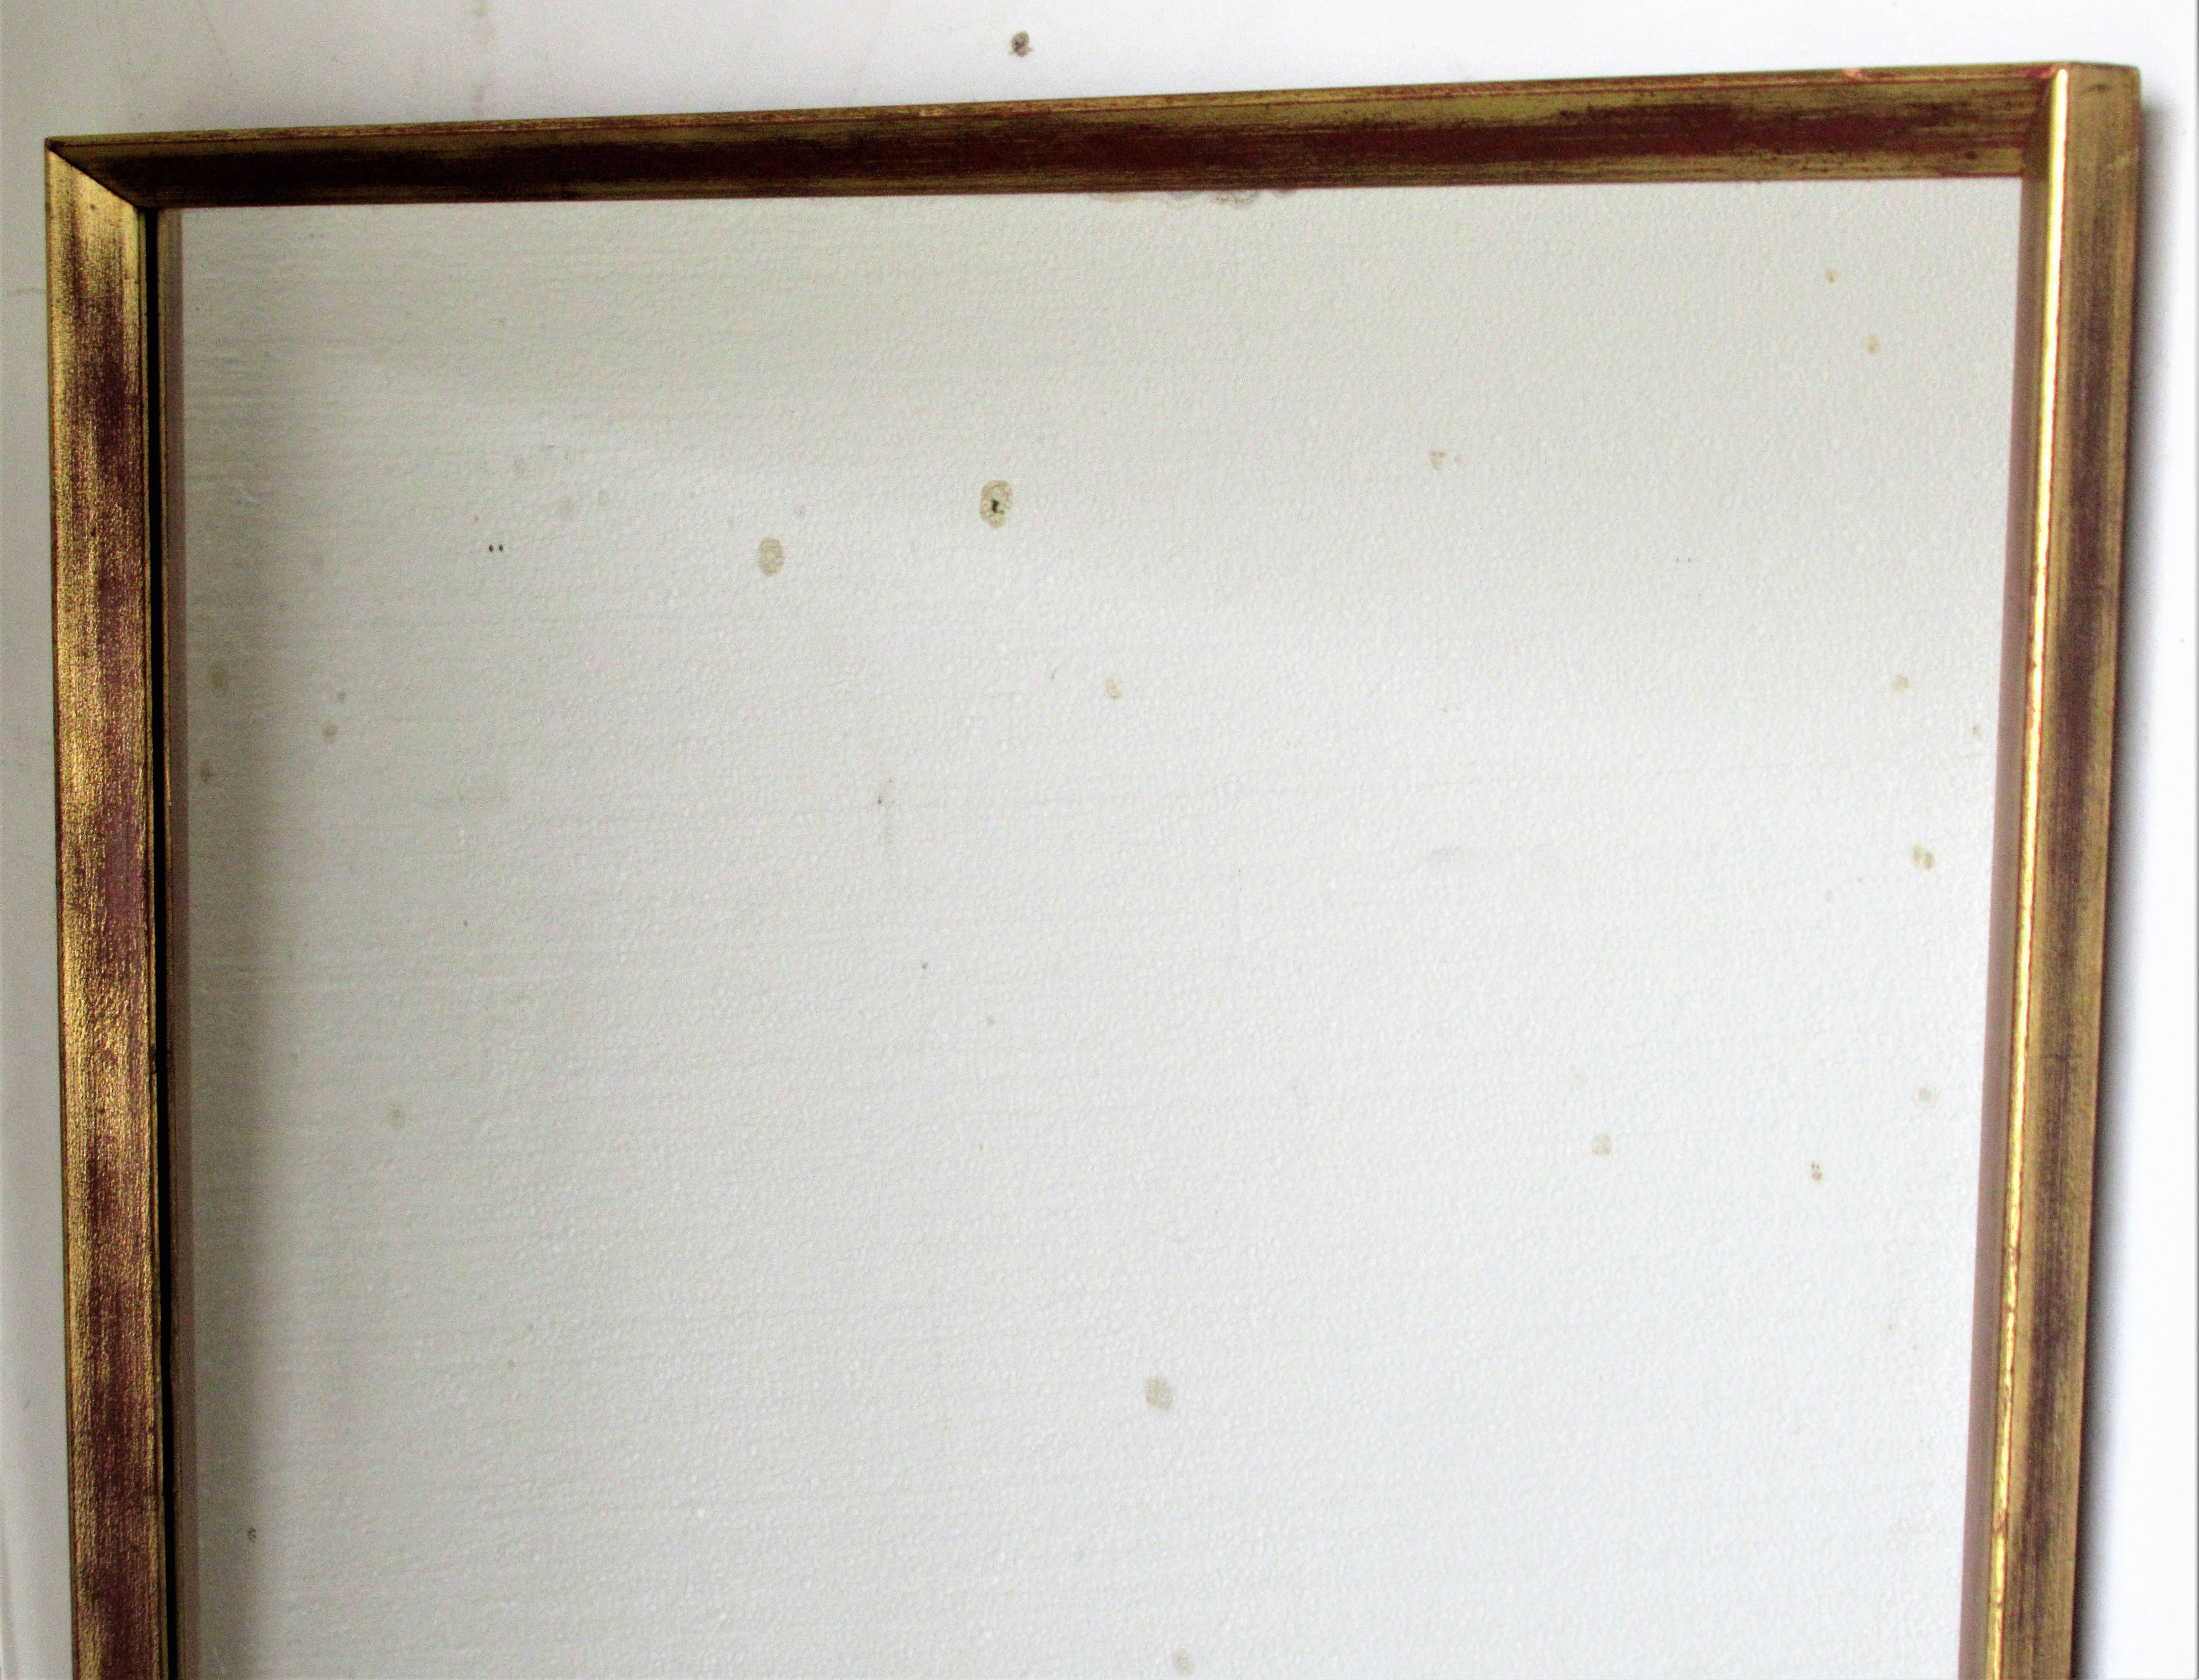  Miroir mural rectangulaire minimaliste encadré en bois doré avec une surface dorée d'origine magnifiquement vieillie et des reflets de bole rouge. Le verre miroir d'époque est brillant avec des zones de petites taches d'oxydation. Probablement